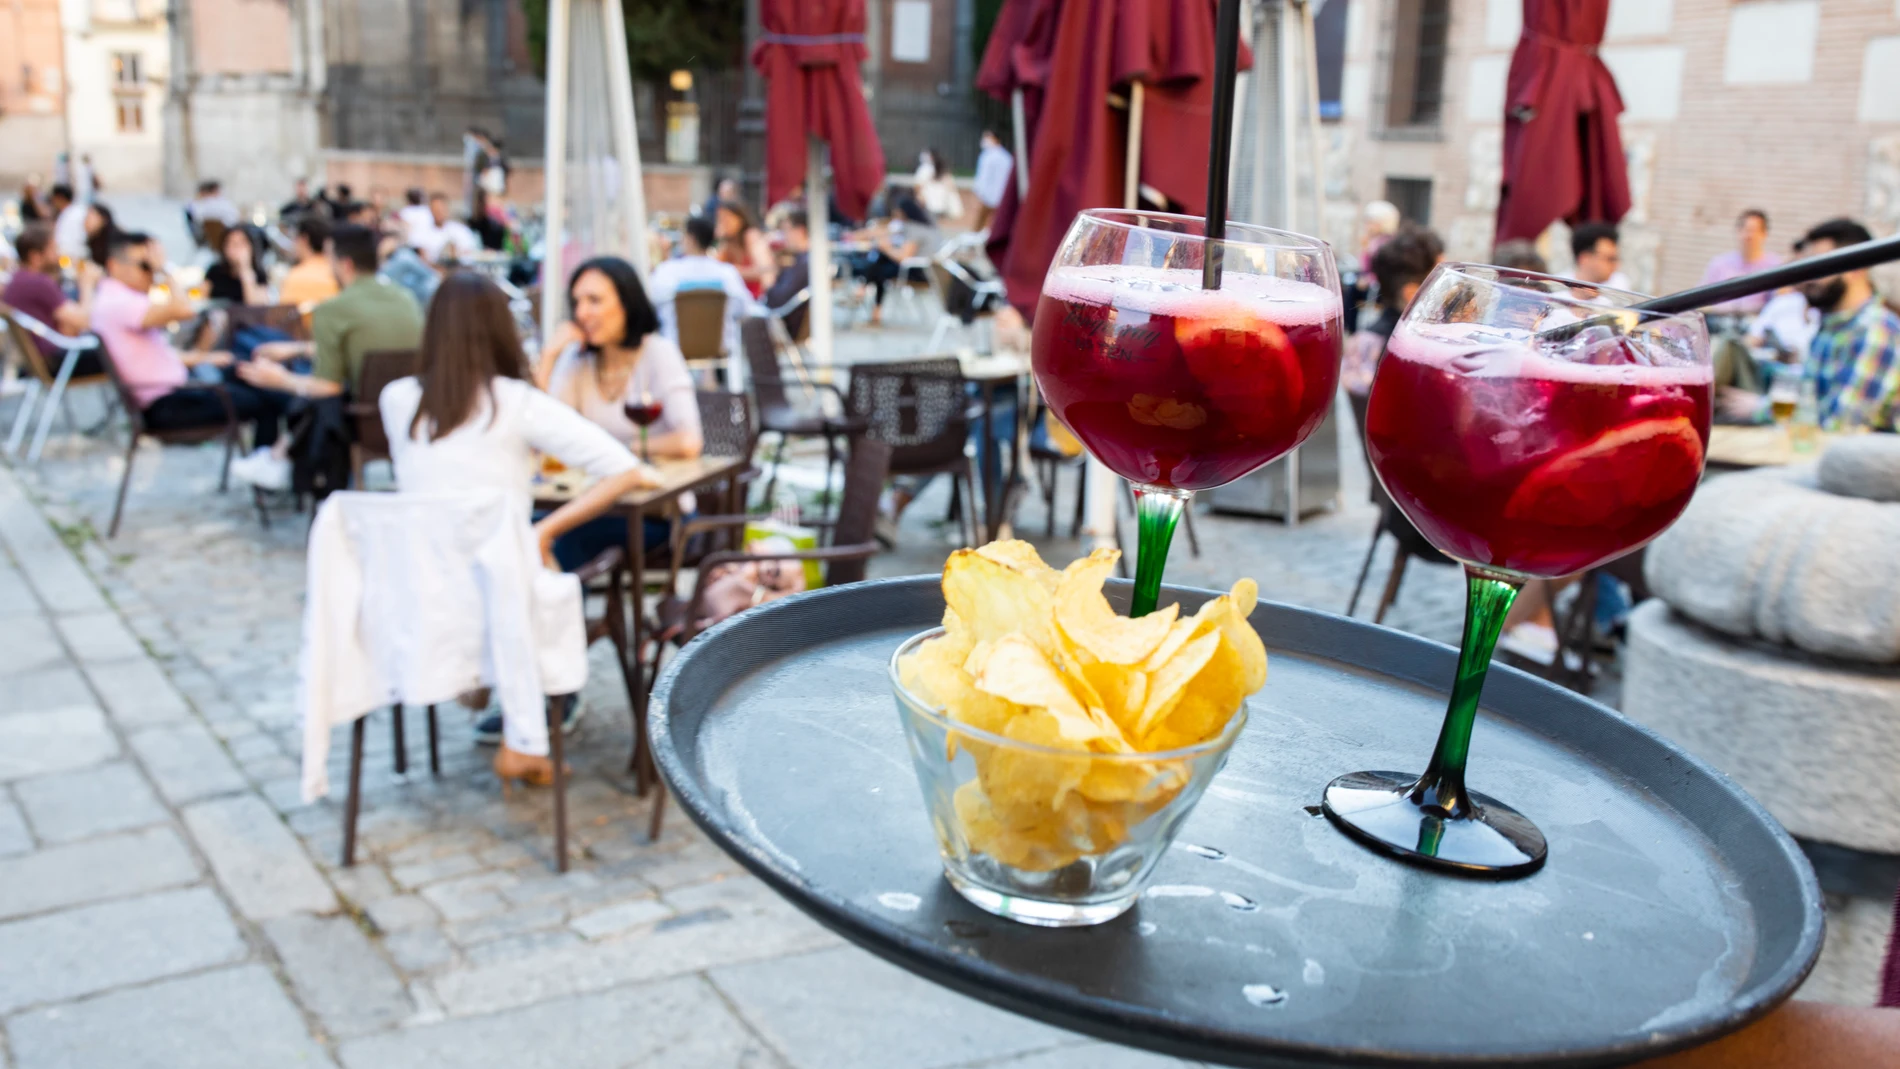 Imagen de un camarero llevando dos tintos de verano a una mesa de una terraza en Madrid.